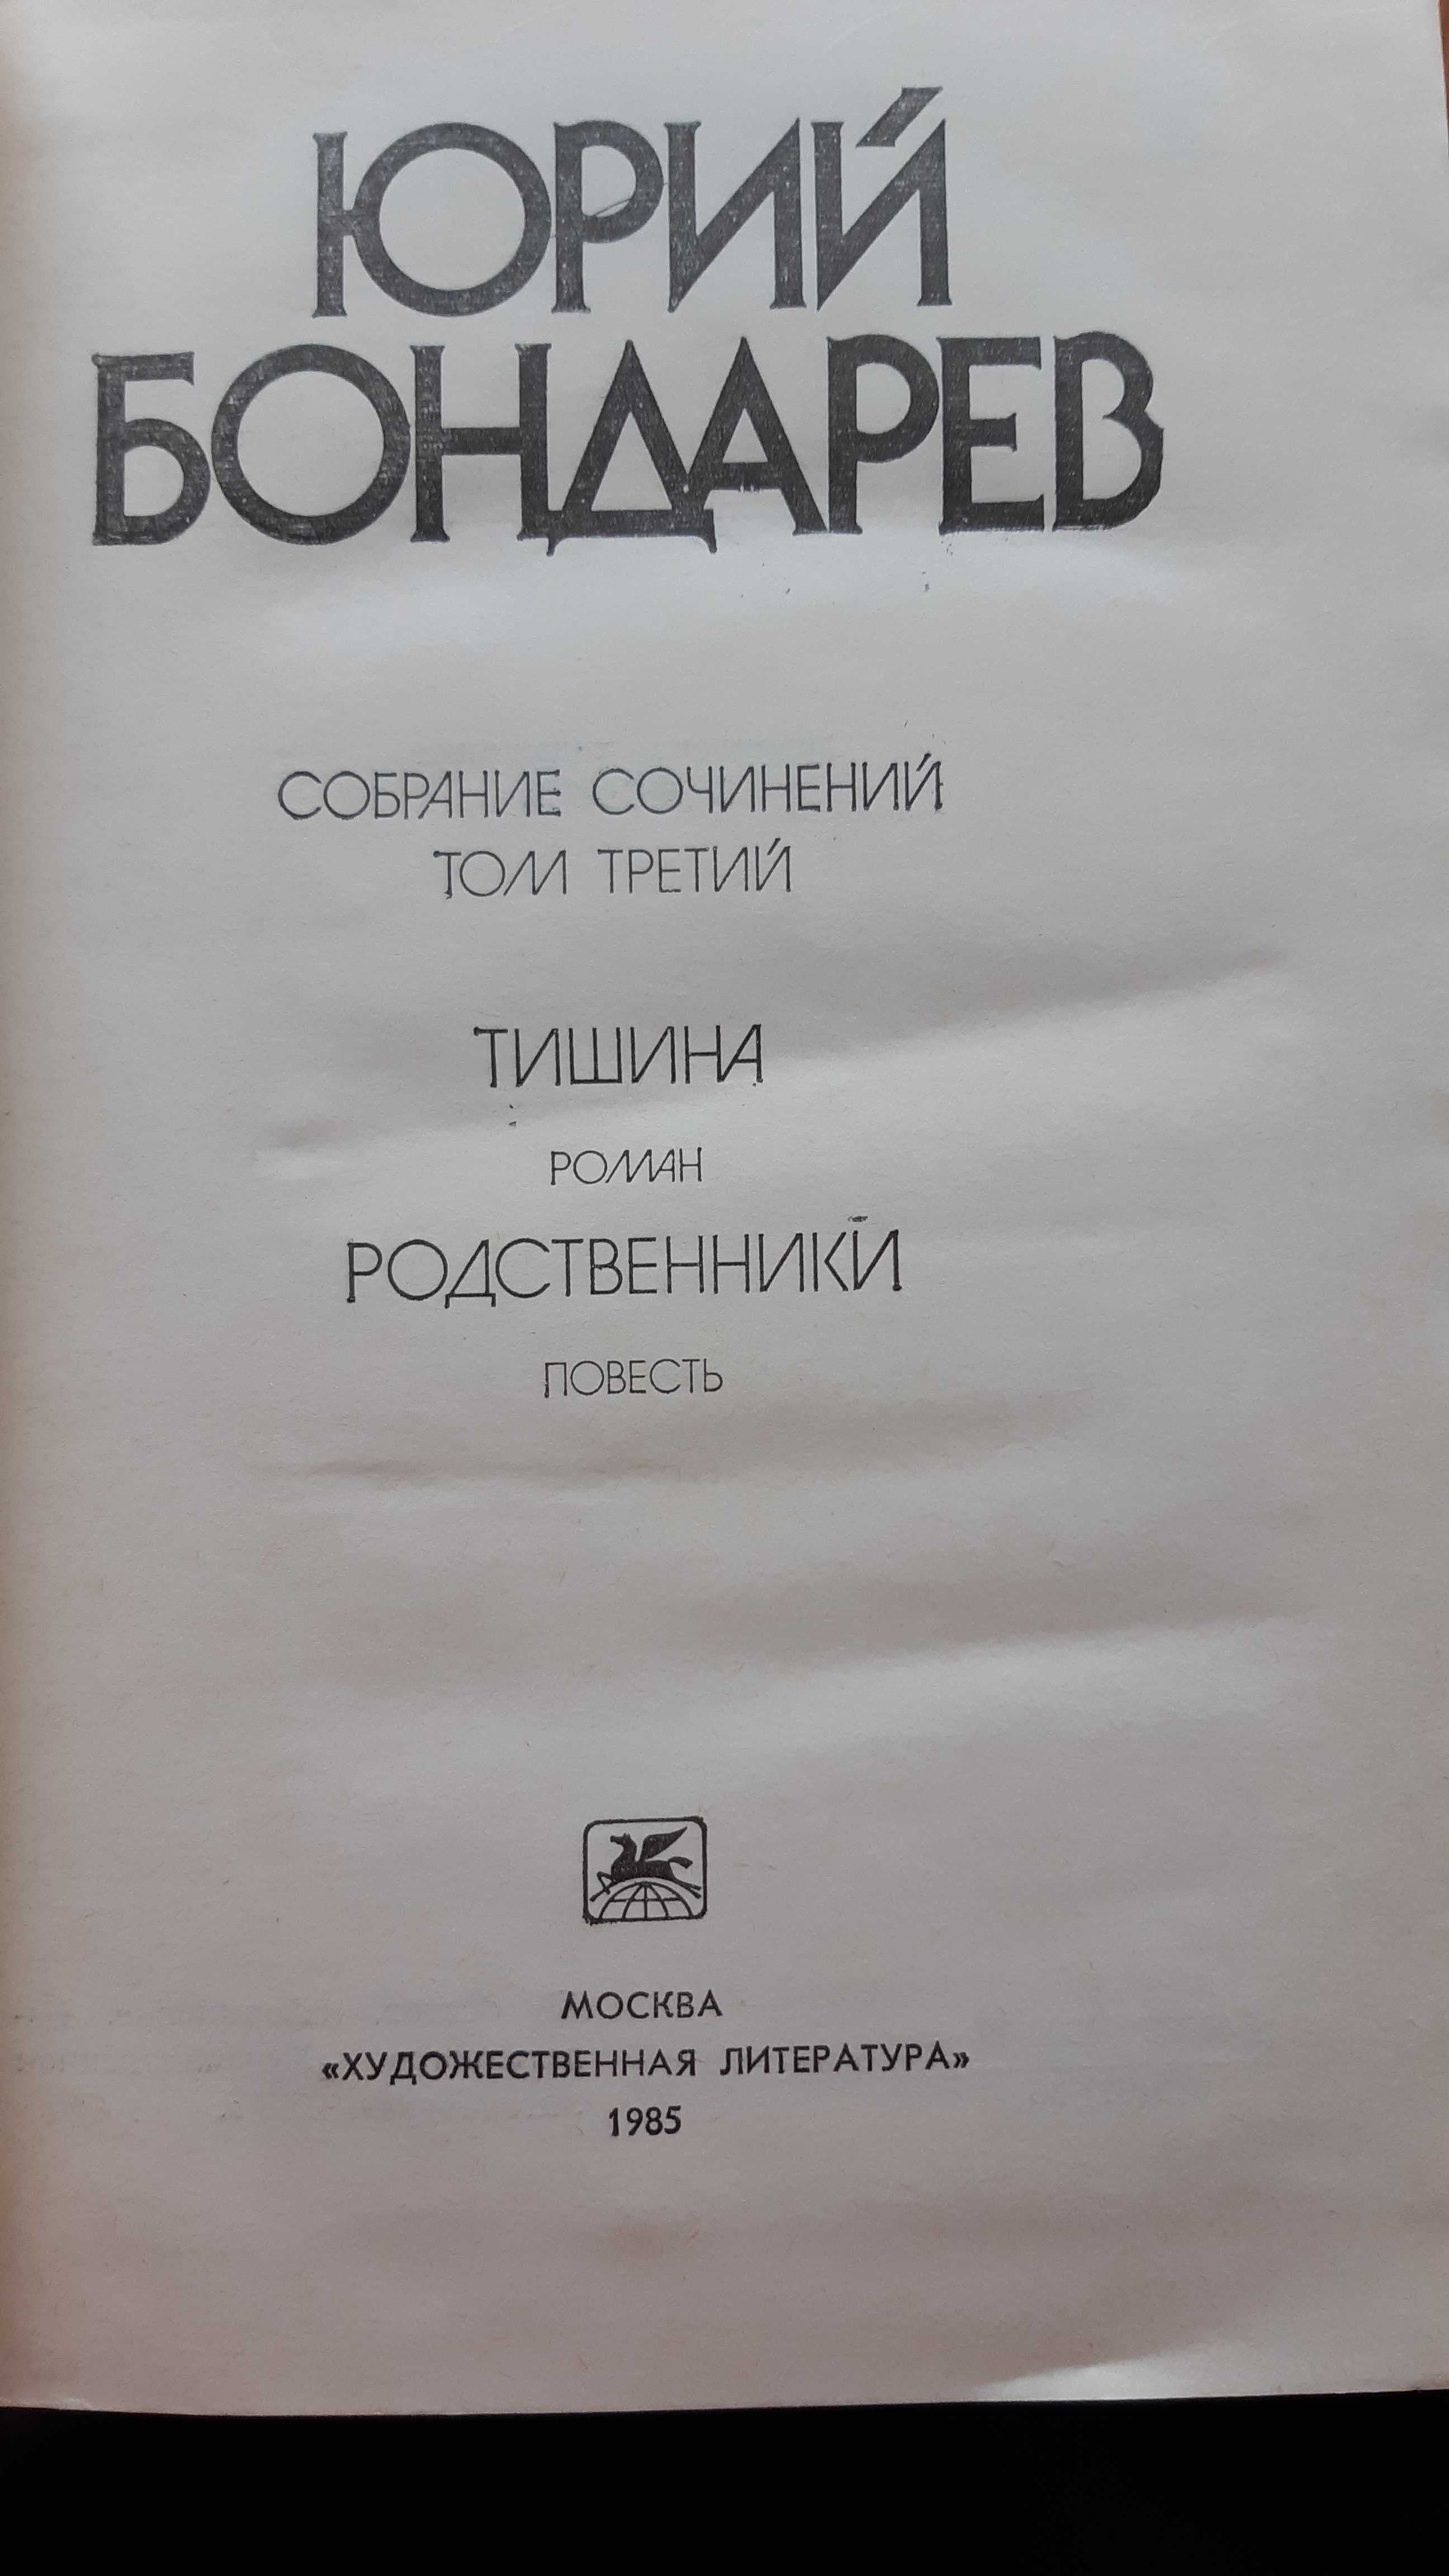 Ю. Бондарев. Собрание сочинений в 6-ти томах.